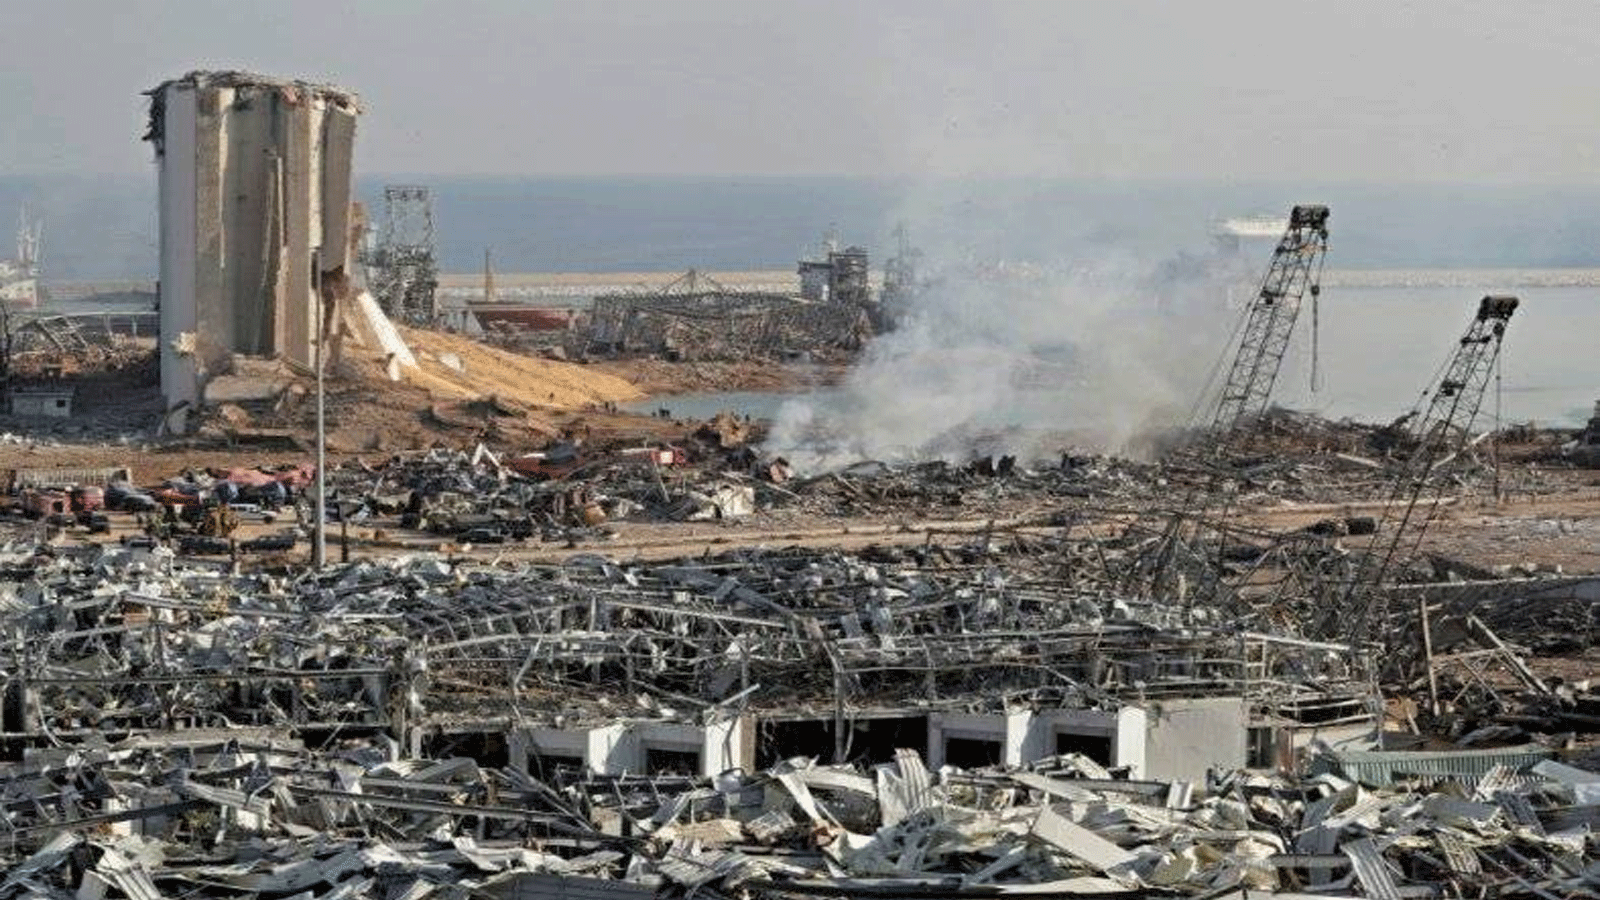 لقطة لمخلفات انفجار 4 آب\أغسطس الذي تسبب بتدمير الميناء والأحياء المحيطة به، وخلف أكثر من 200 قتيل وأكثر من 6500 جريح